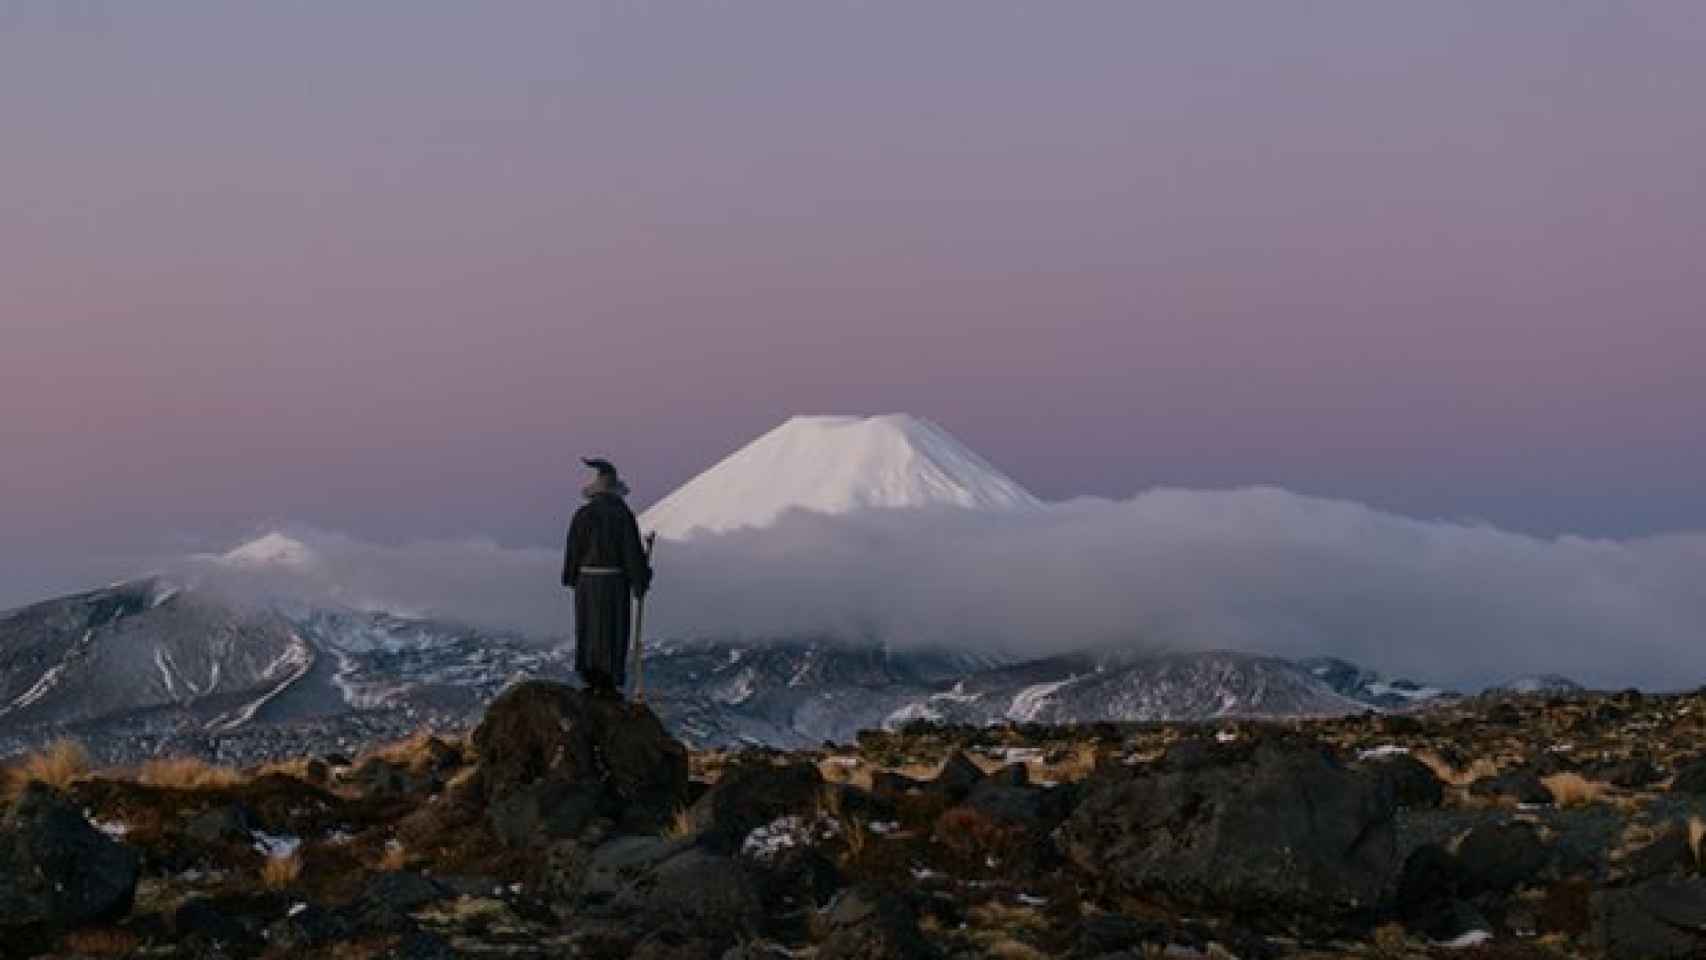 Una de las imágenes tomadas por Akhil Suhas frente al Monte Ngauruhoe (Mordor).